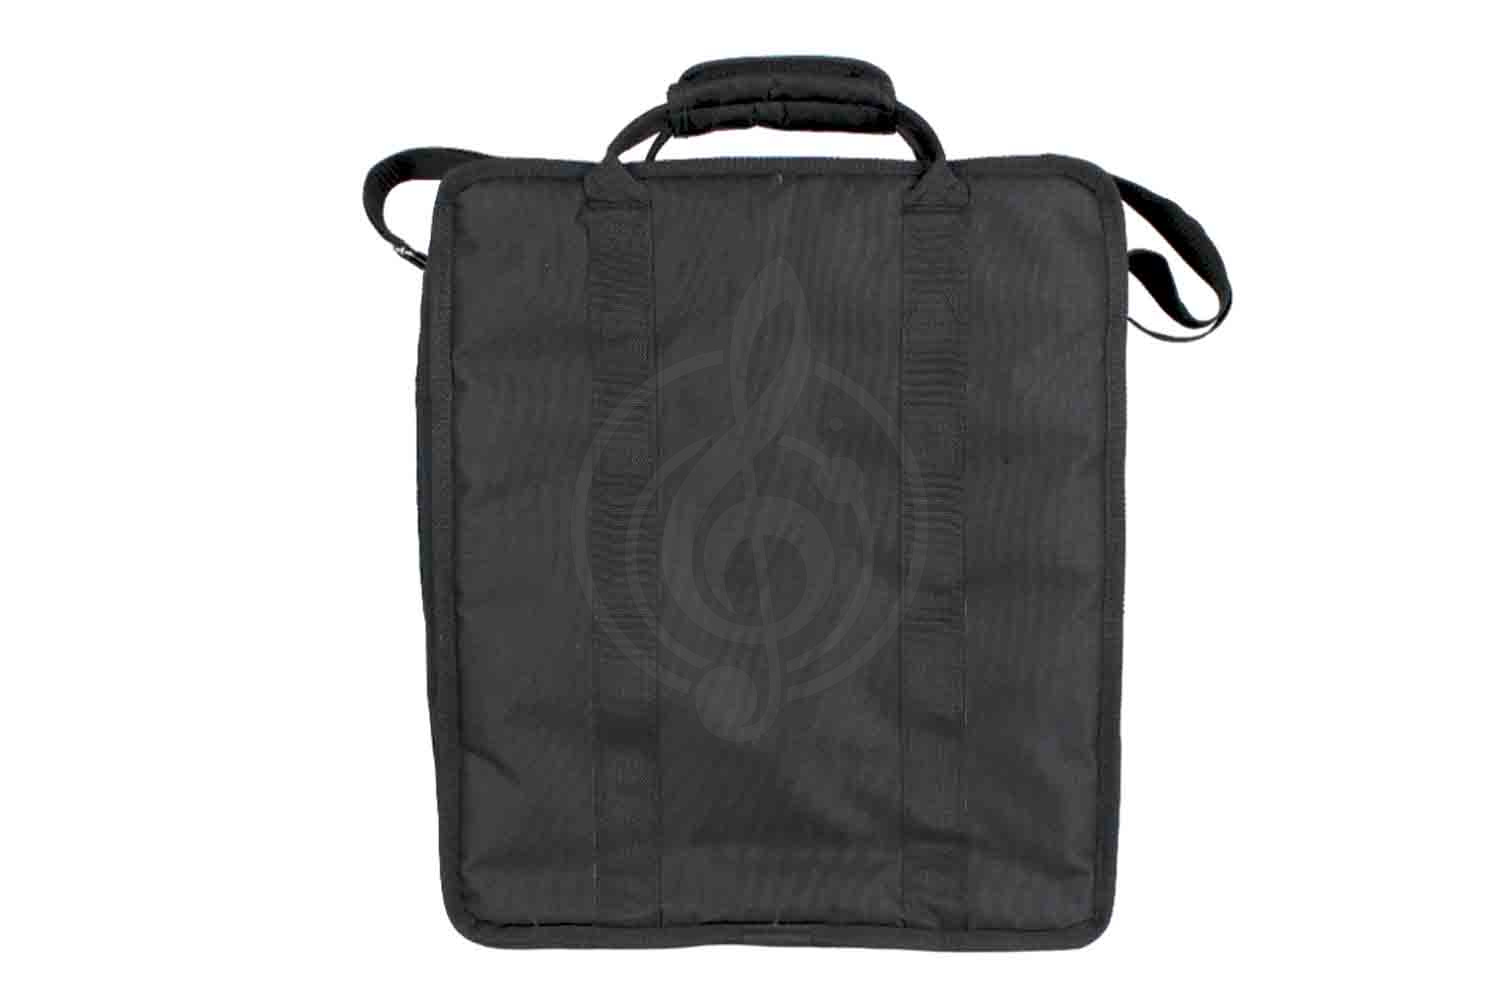 Чехол и кейс для звукового оборудования Magic Music Bag Ч-ПМ8 - чехол для микшера GrandVox PM-8, Magic Music Bag Ч-ПМ8 в магазине DominantaMusic - фото 3